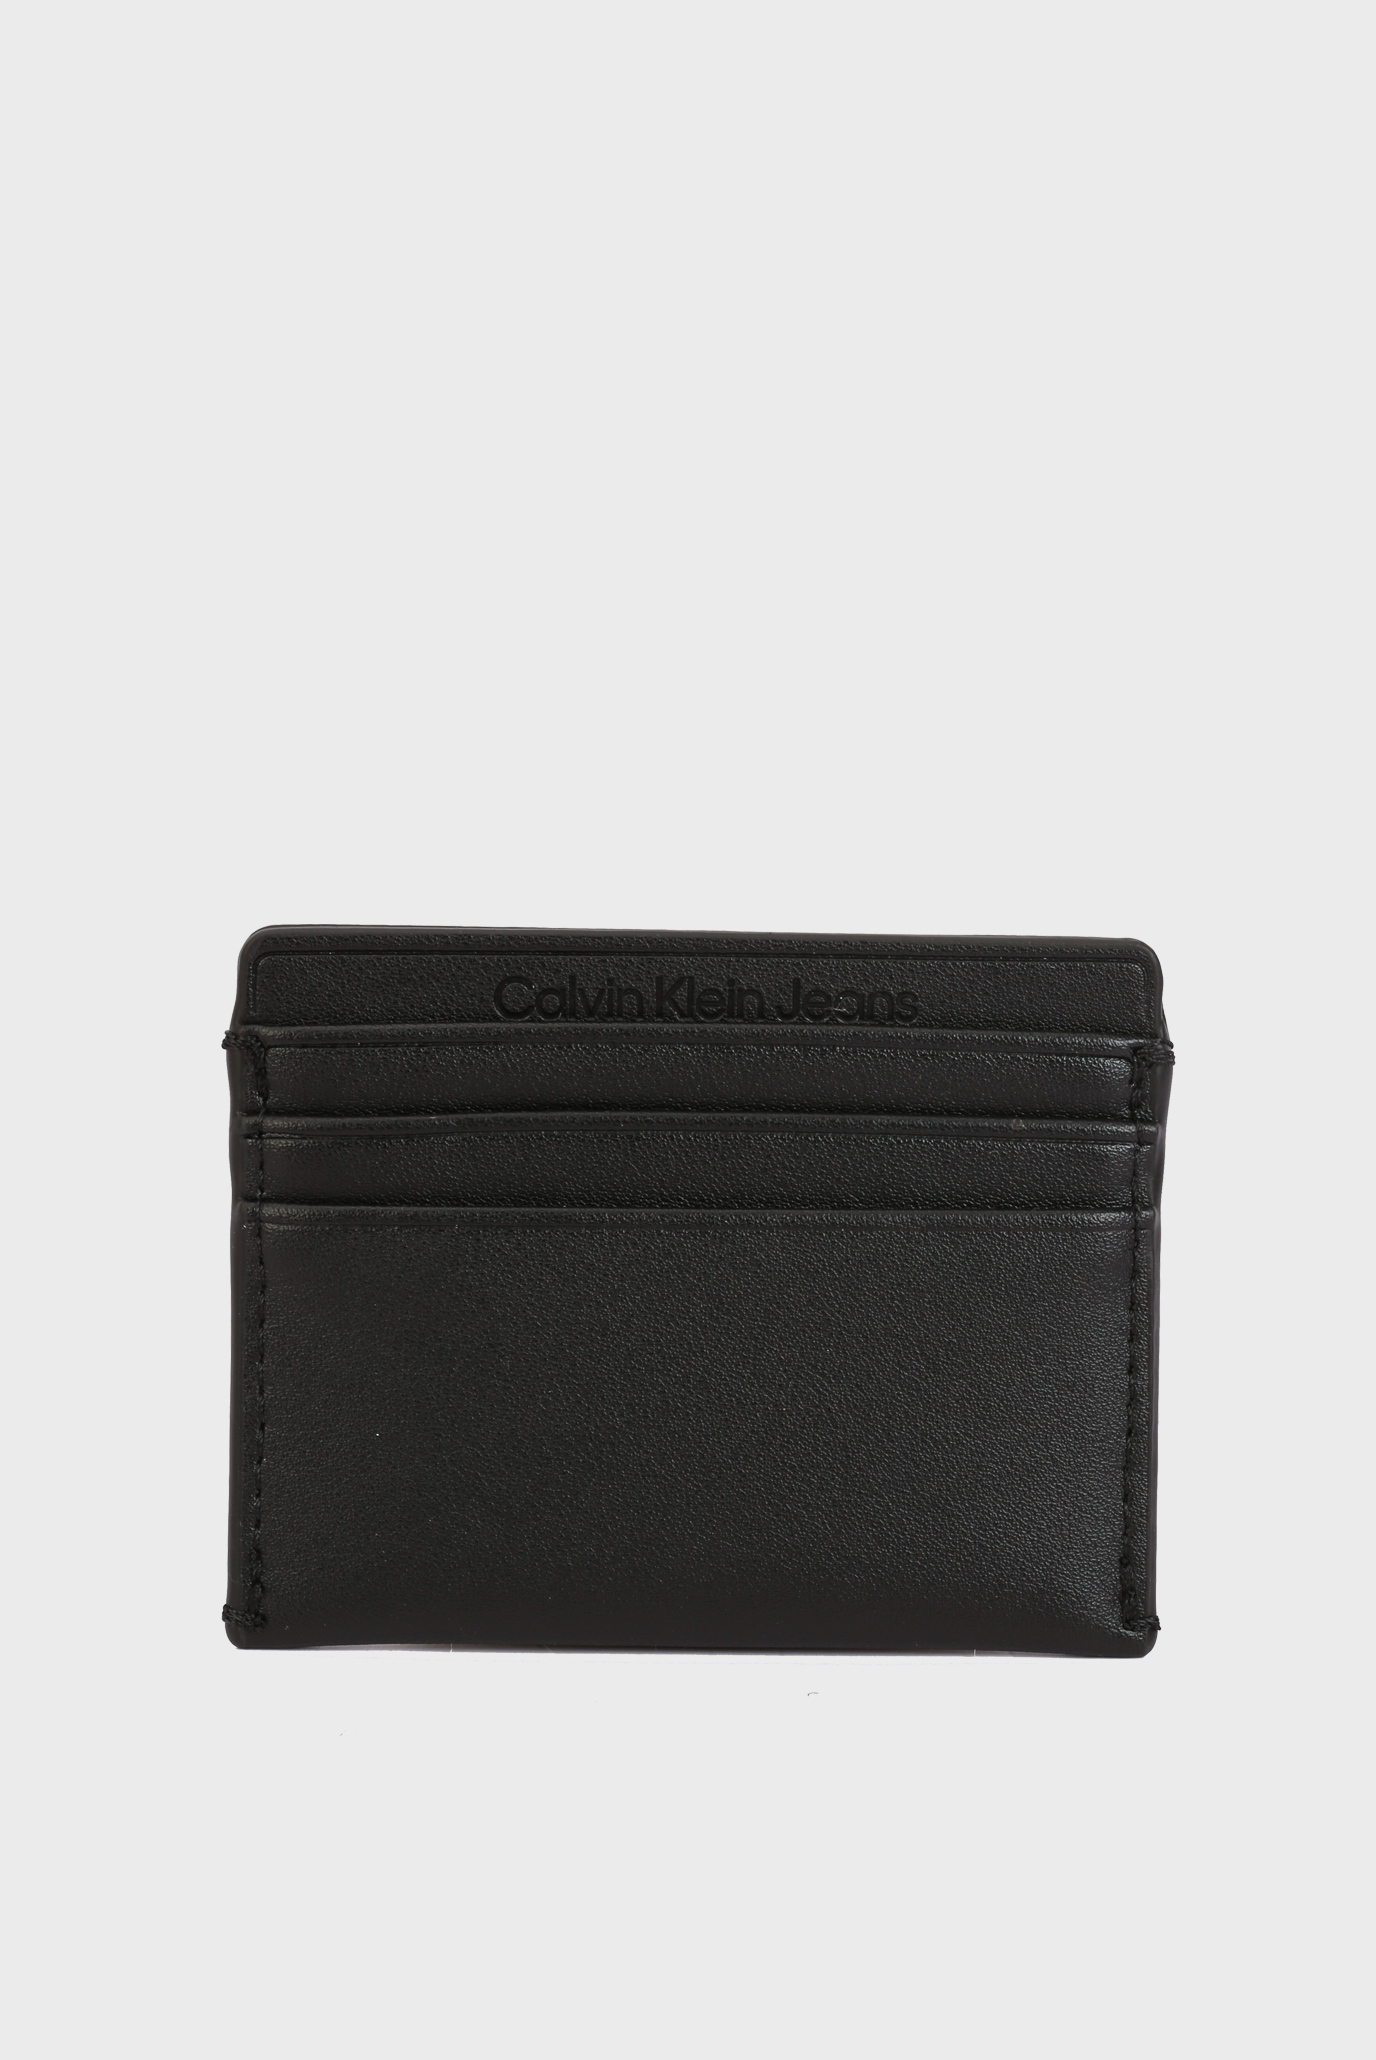 Calvin Klein Ck must mono cardholder 6cc 